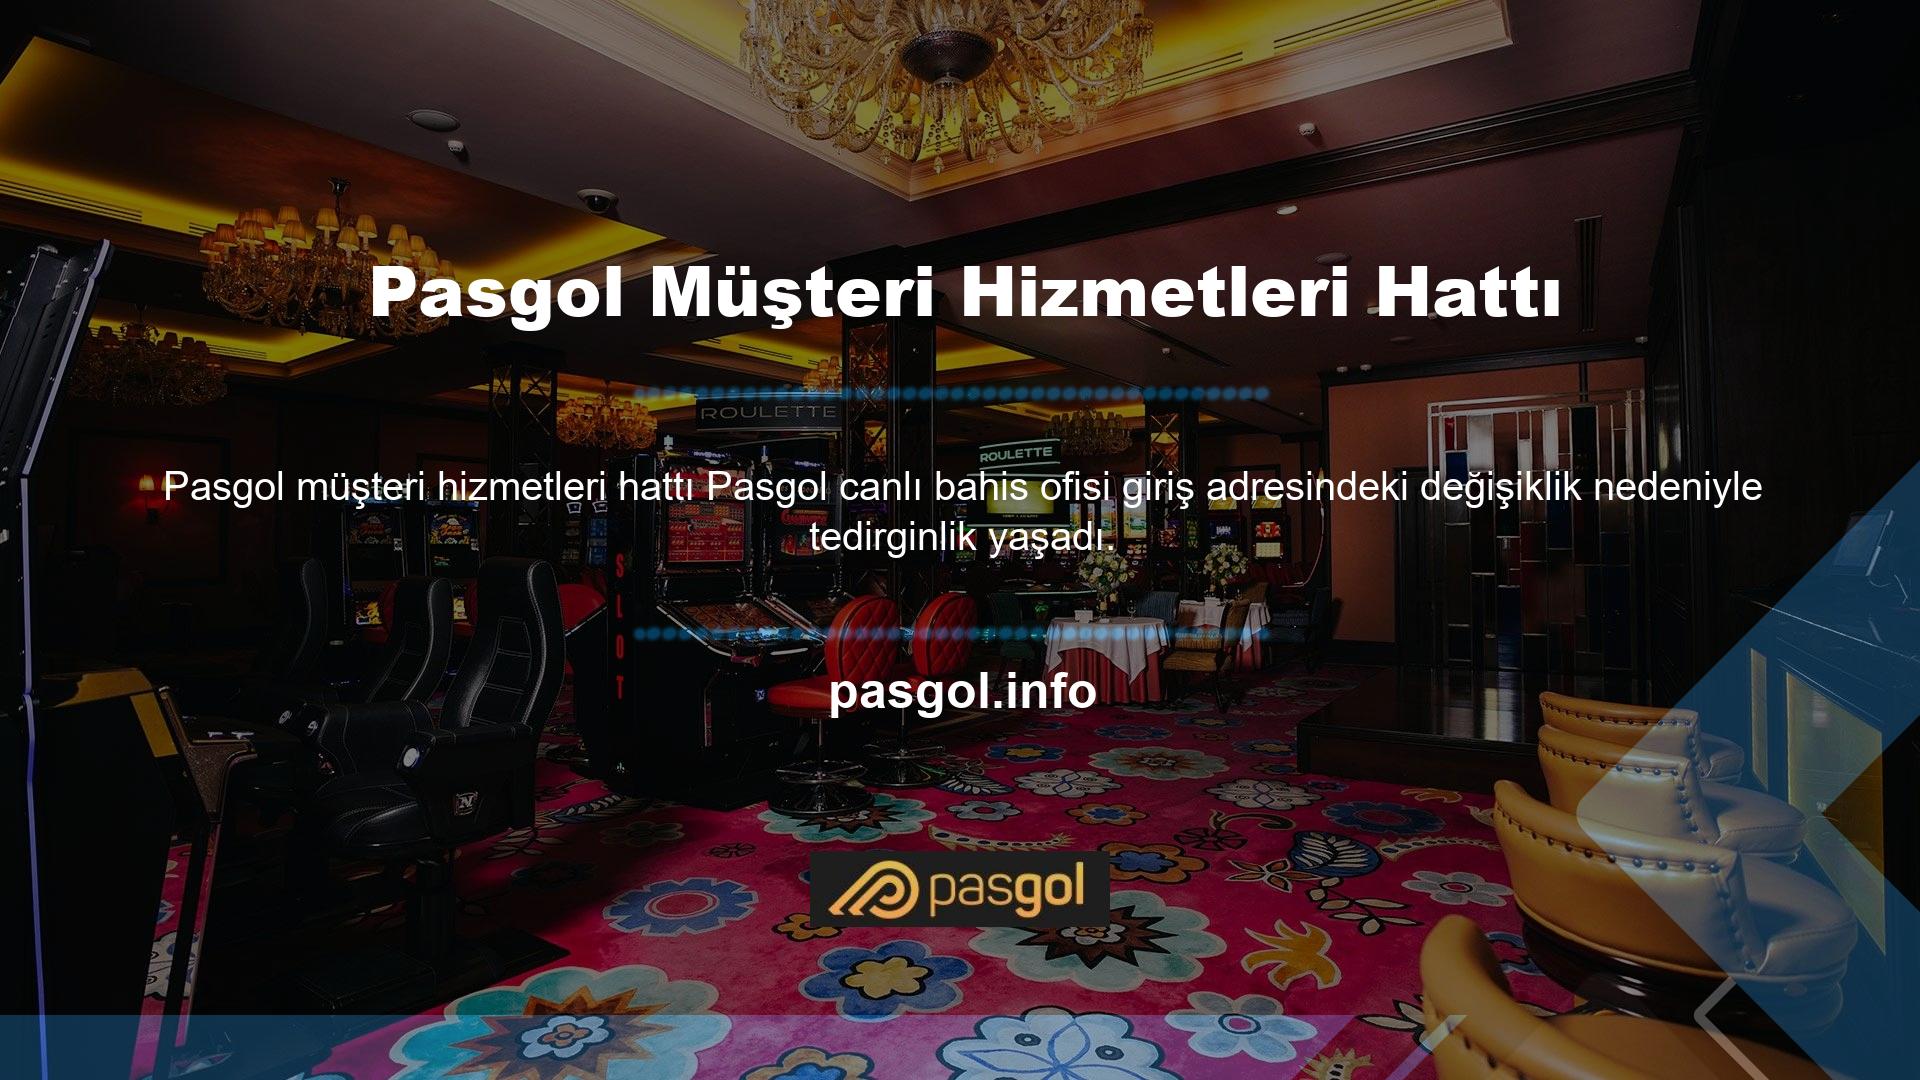 Pasgol web sitesi giriş adresini değiştirdi ve bazı oyuncular hesaplarının sonlandırıldığına inanıyor